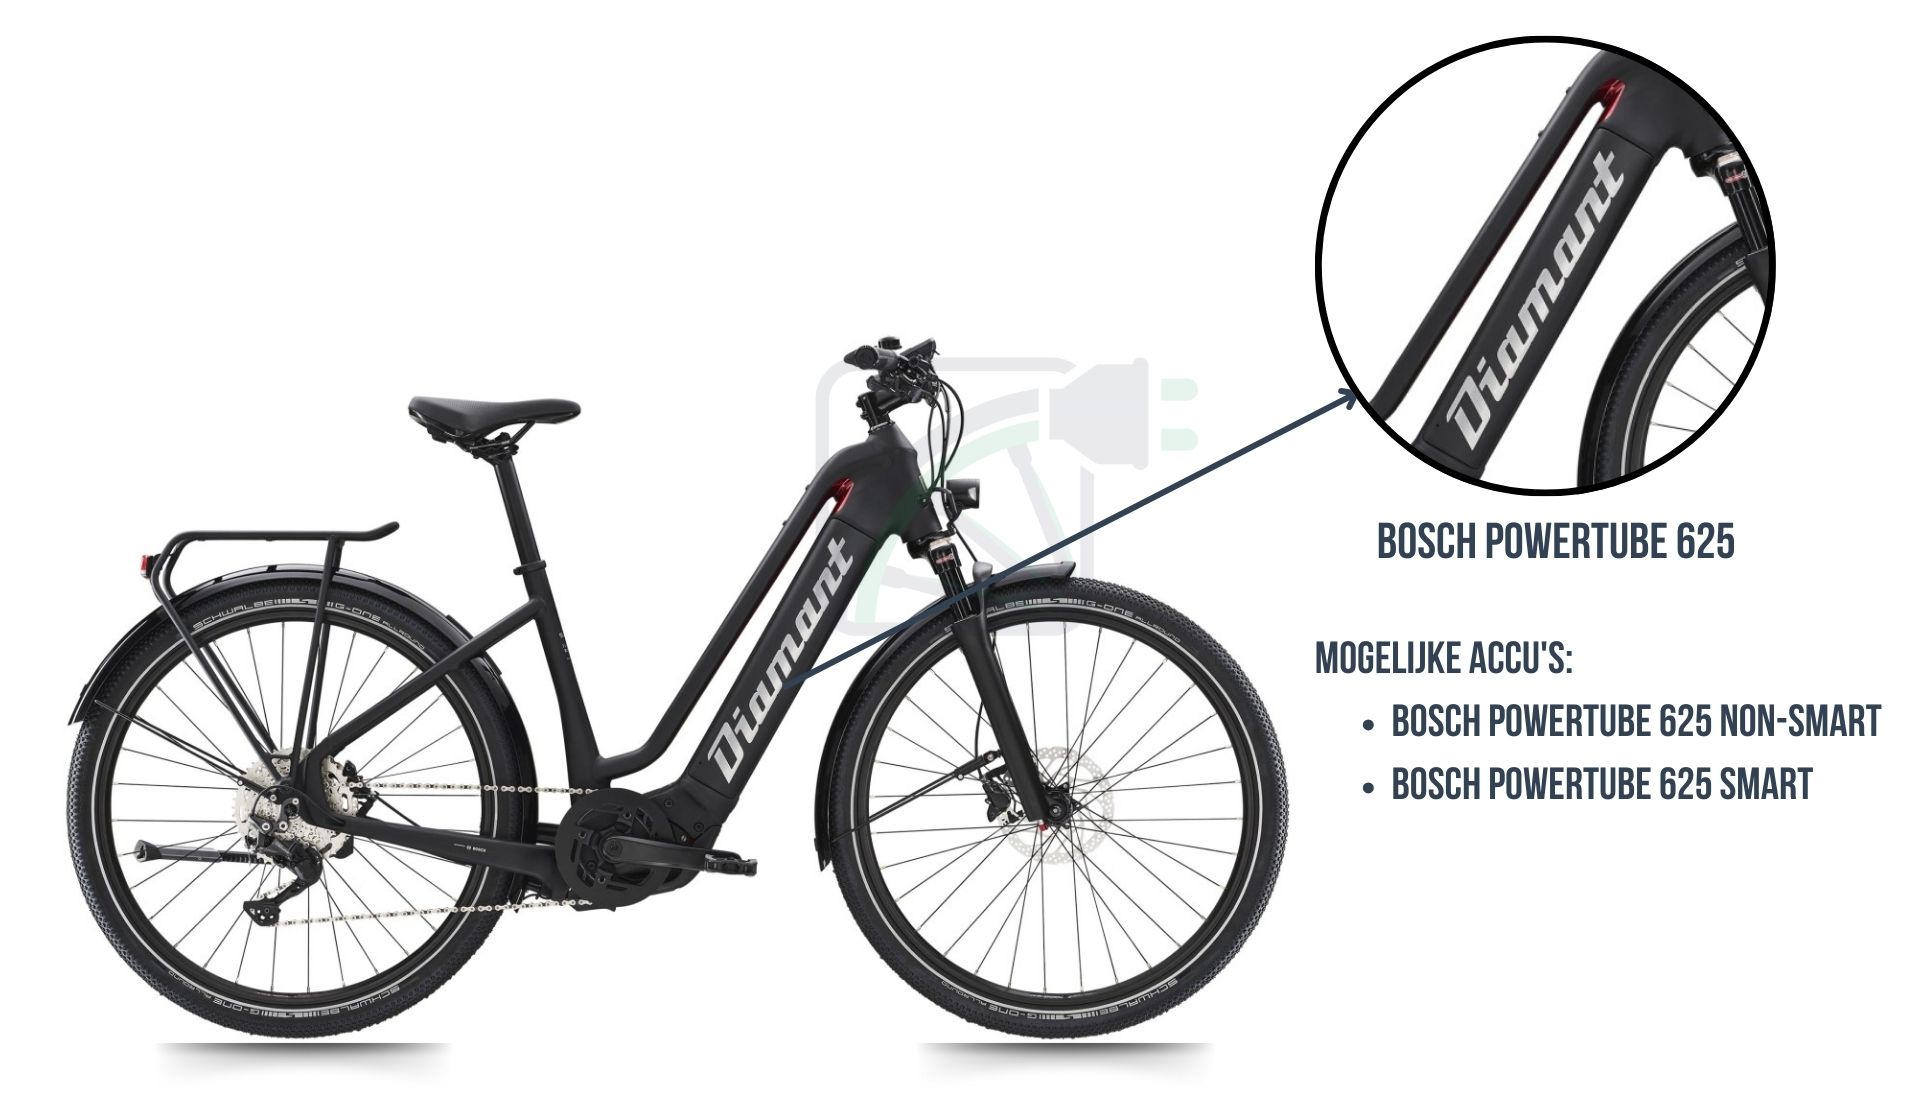 De Diamant Zouma elektrische fiets met daarbij uitgelicht welke fietsbatterij er bij deze fiets hoort. Dit is namelijk de Bosch Powertube 625 SMART of de Bosch Powertube 625 non-SMART.